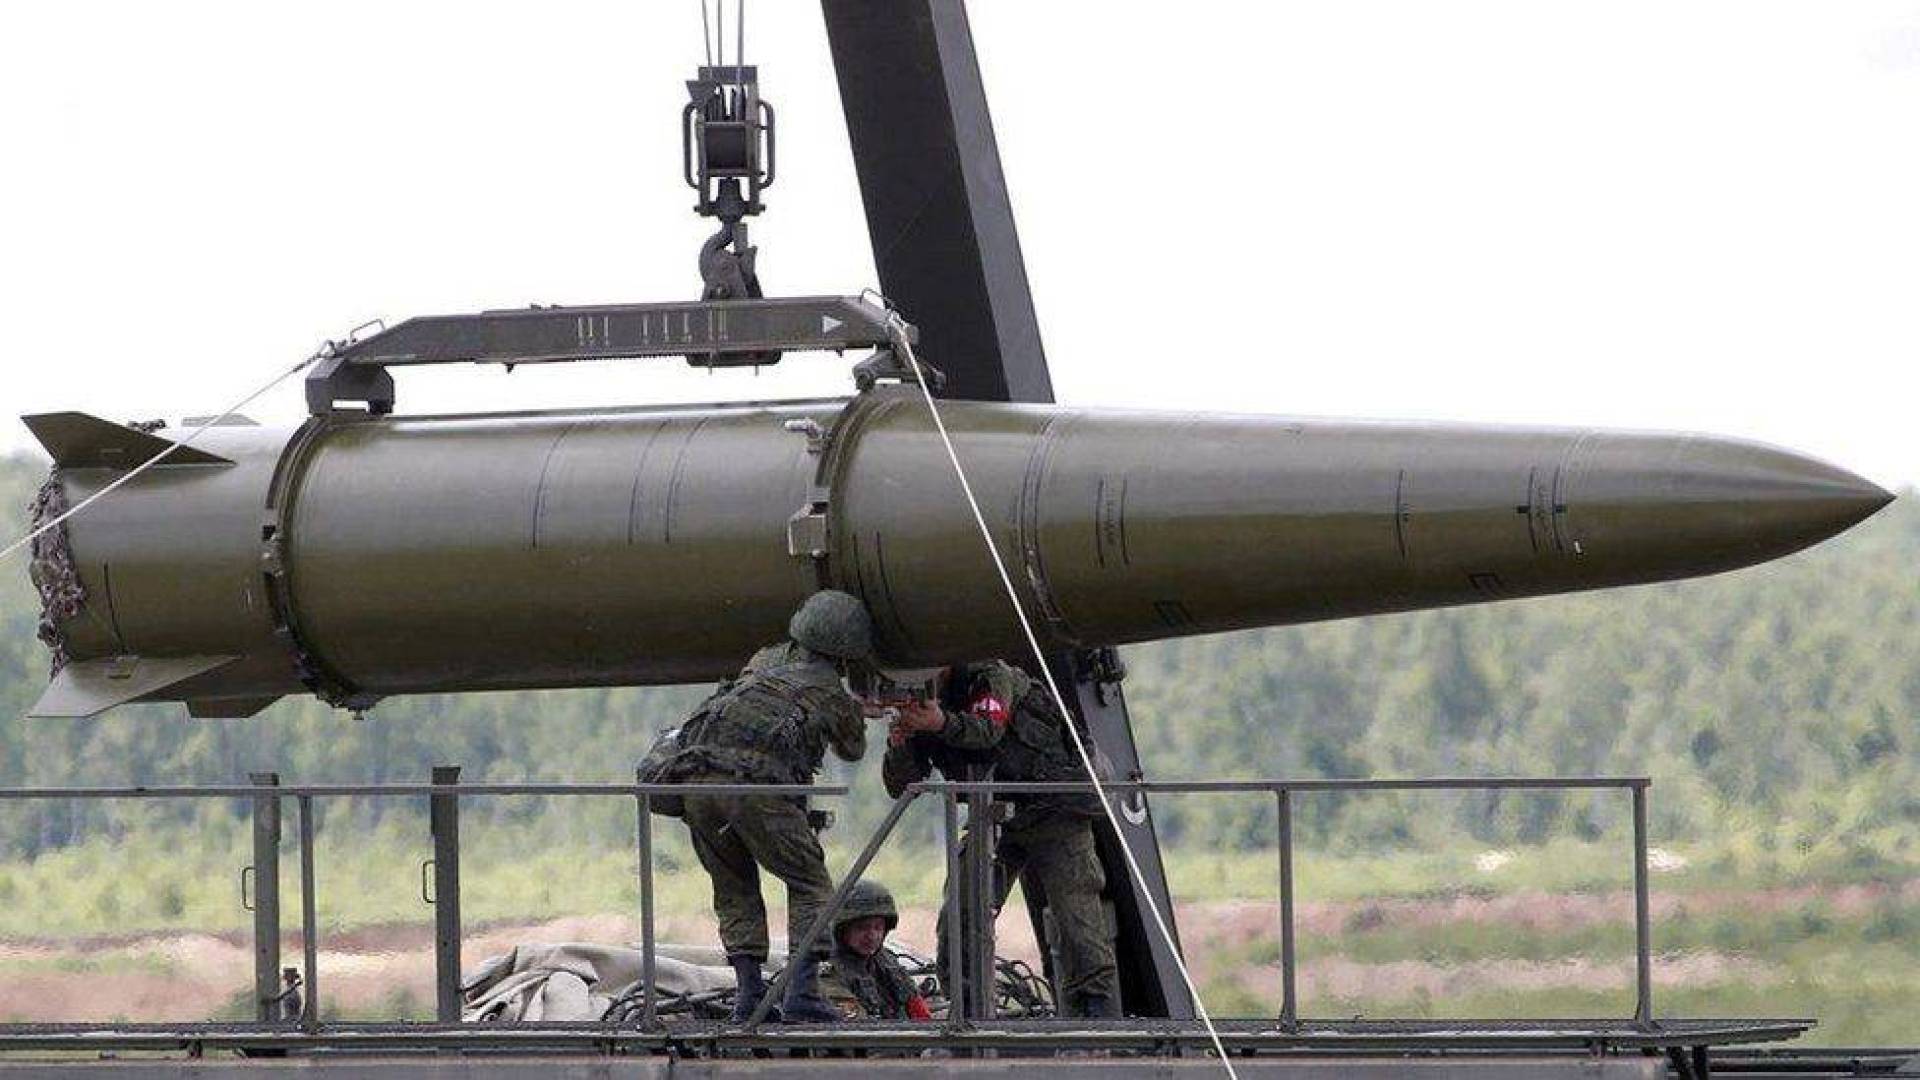 مواصفات صواريخ كروز الروسية والاستخدامات القتالية